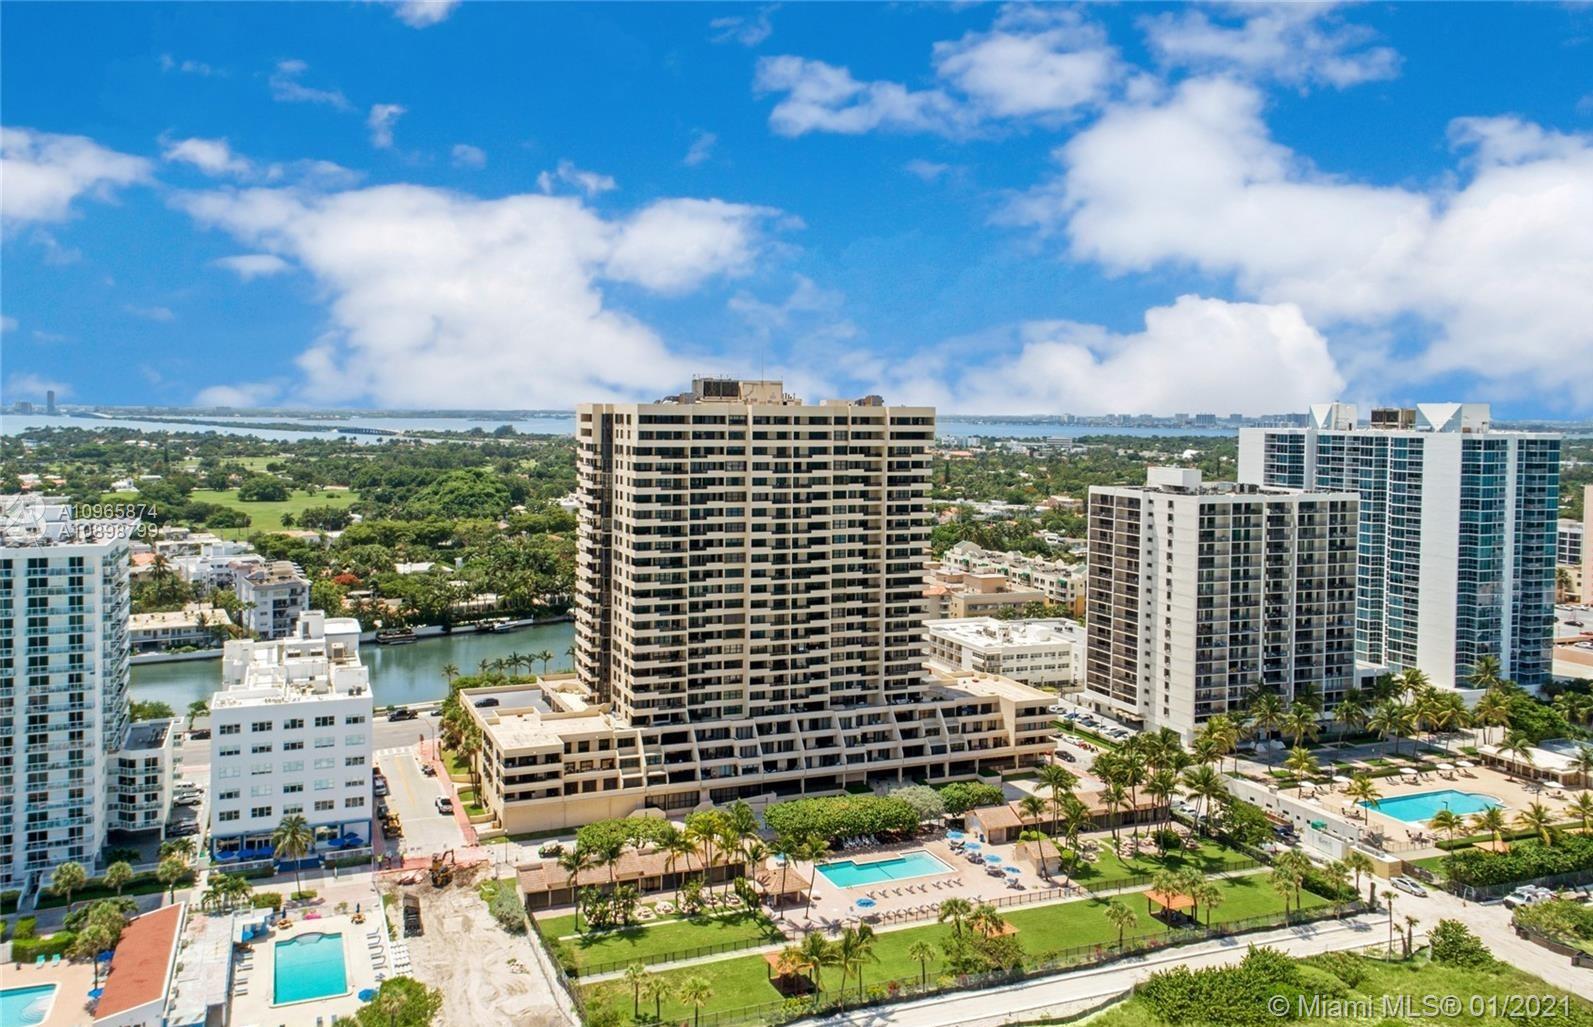 Club Atlantis Unit #1107 Condo for Sale in Mid-Beach - Miami Beach